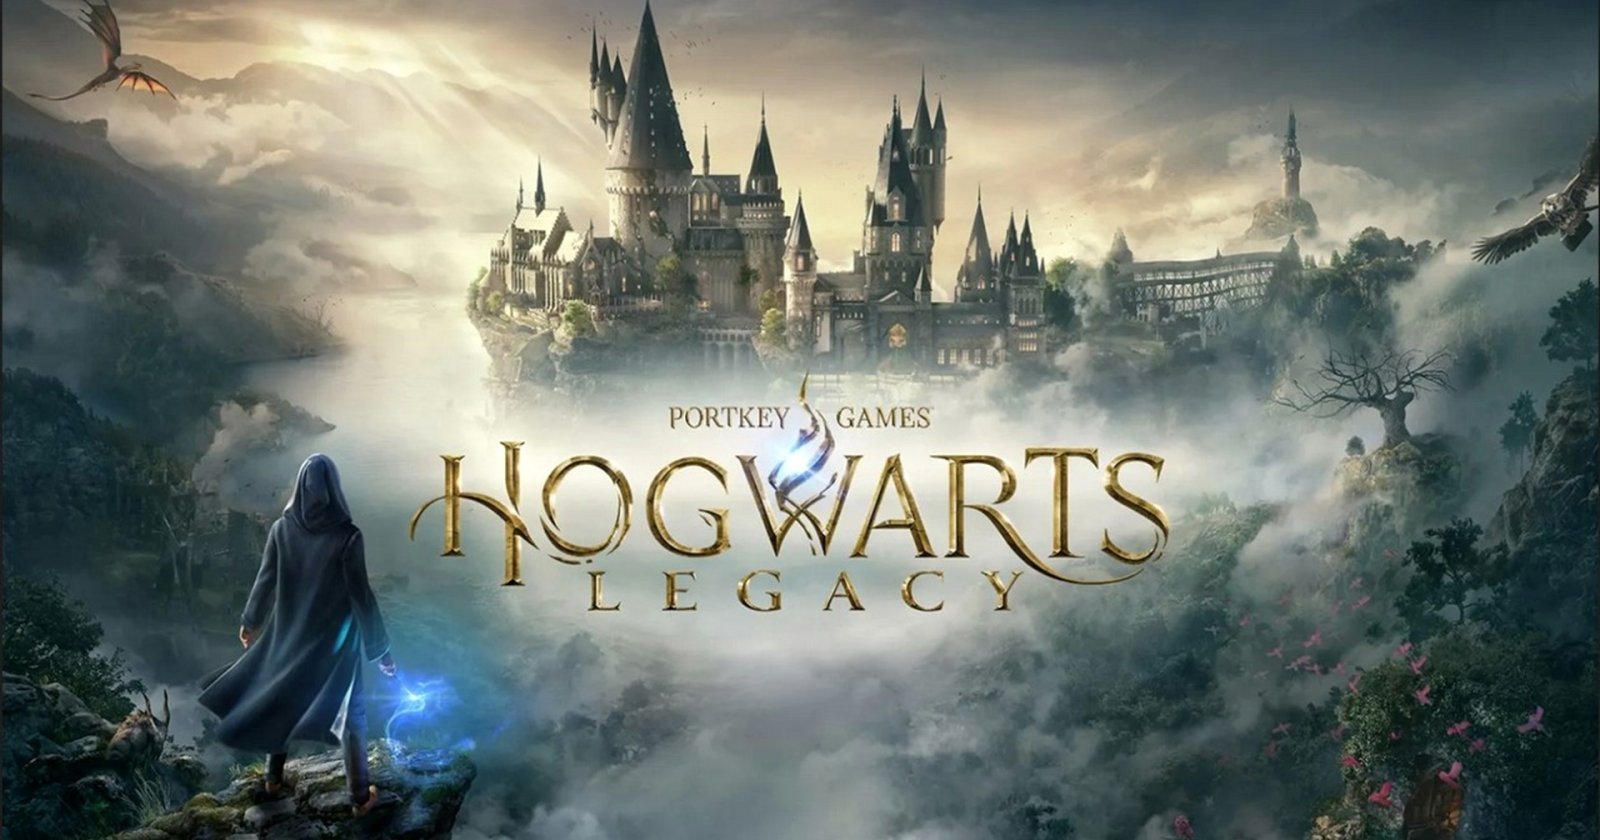 ทีมงานสร้าง Hogwarts Legacy กำลังอยู่ระหว่างสร้างเกมฟอร์มยักษ์อยู่อีก 1 เกม